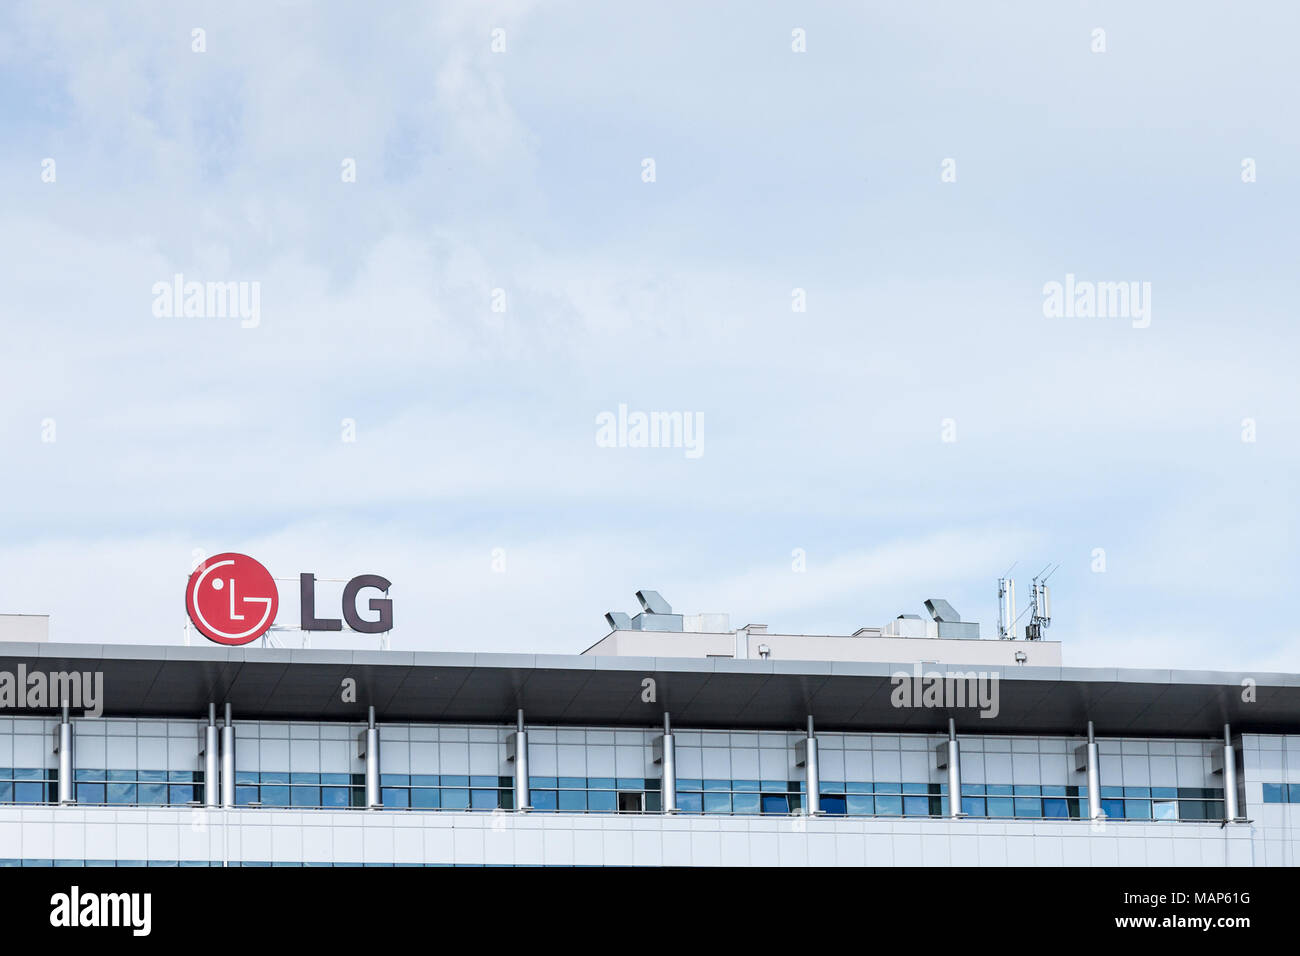 Belgrado, Serbia - MARZO 30, 2018: LG Electronics logo sulla loro sede principale per la Serbia. LG è una delle aziende leader in IT e telecomunicazioni technolog Foto Stock